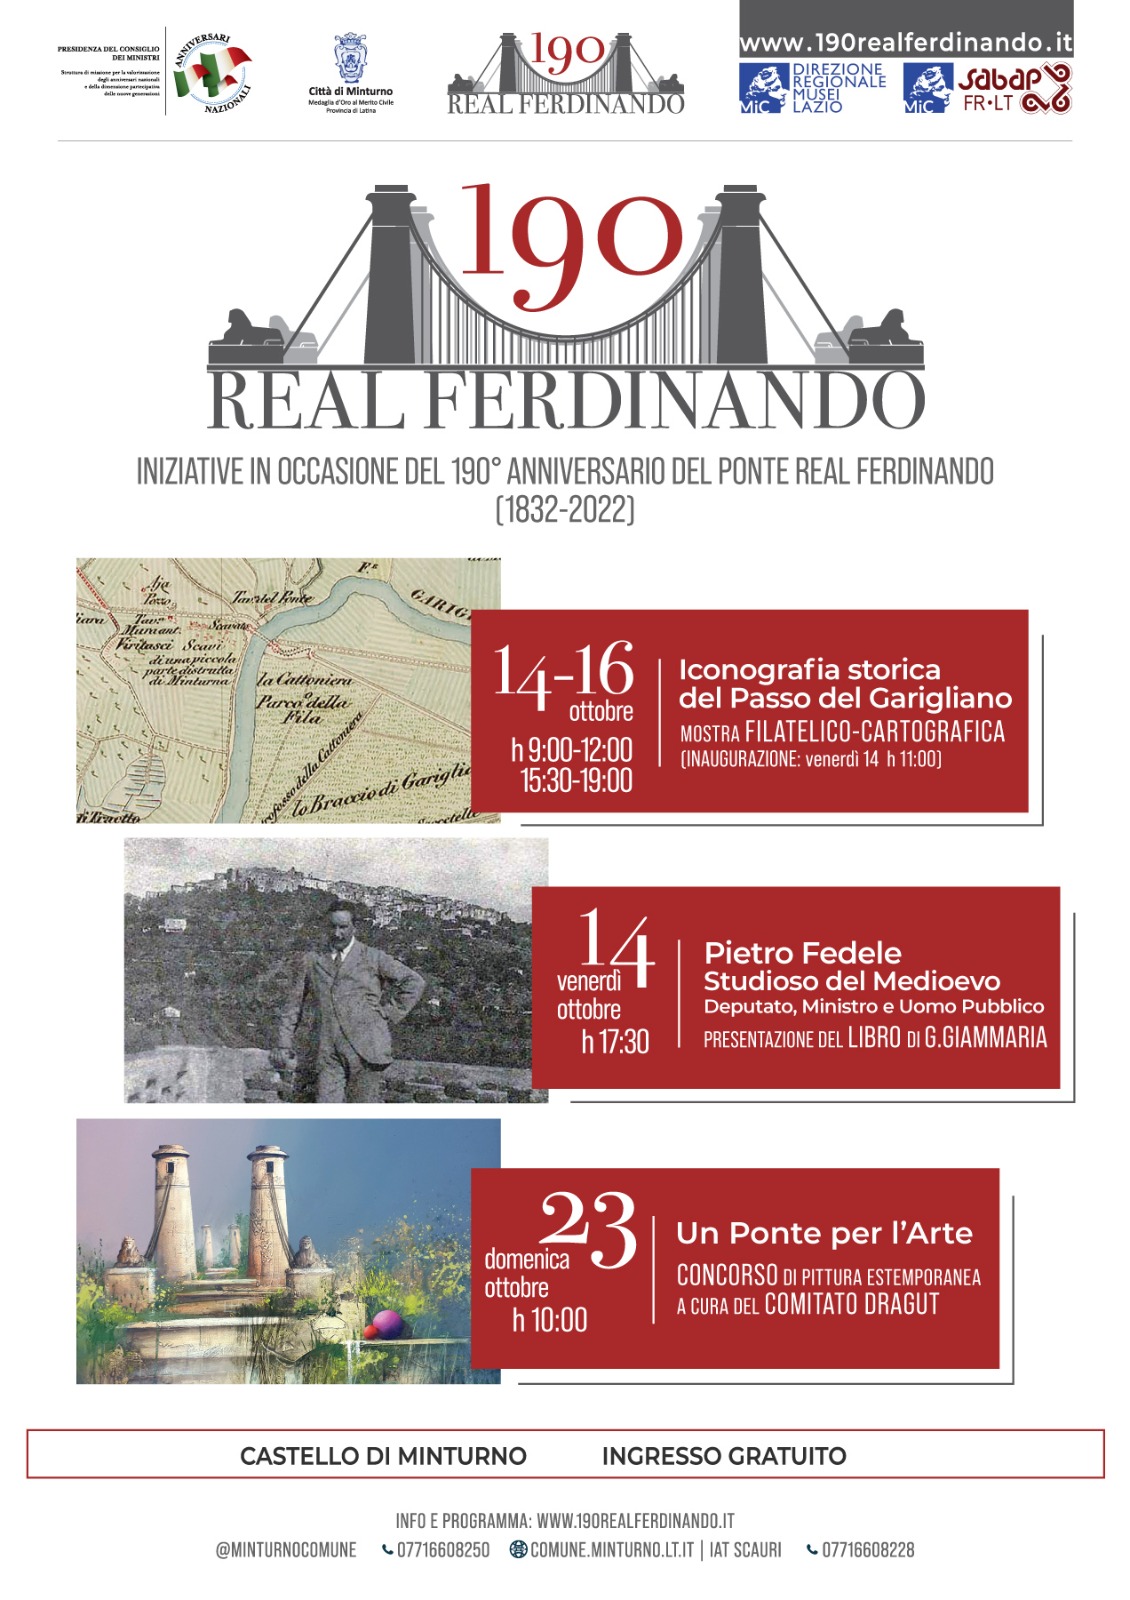 Iniziative per il 190° del Ponte Real Ferdinando (1832-2022) - ottobre